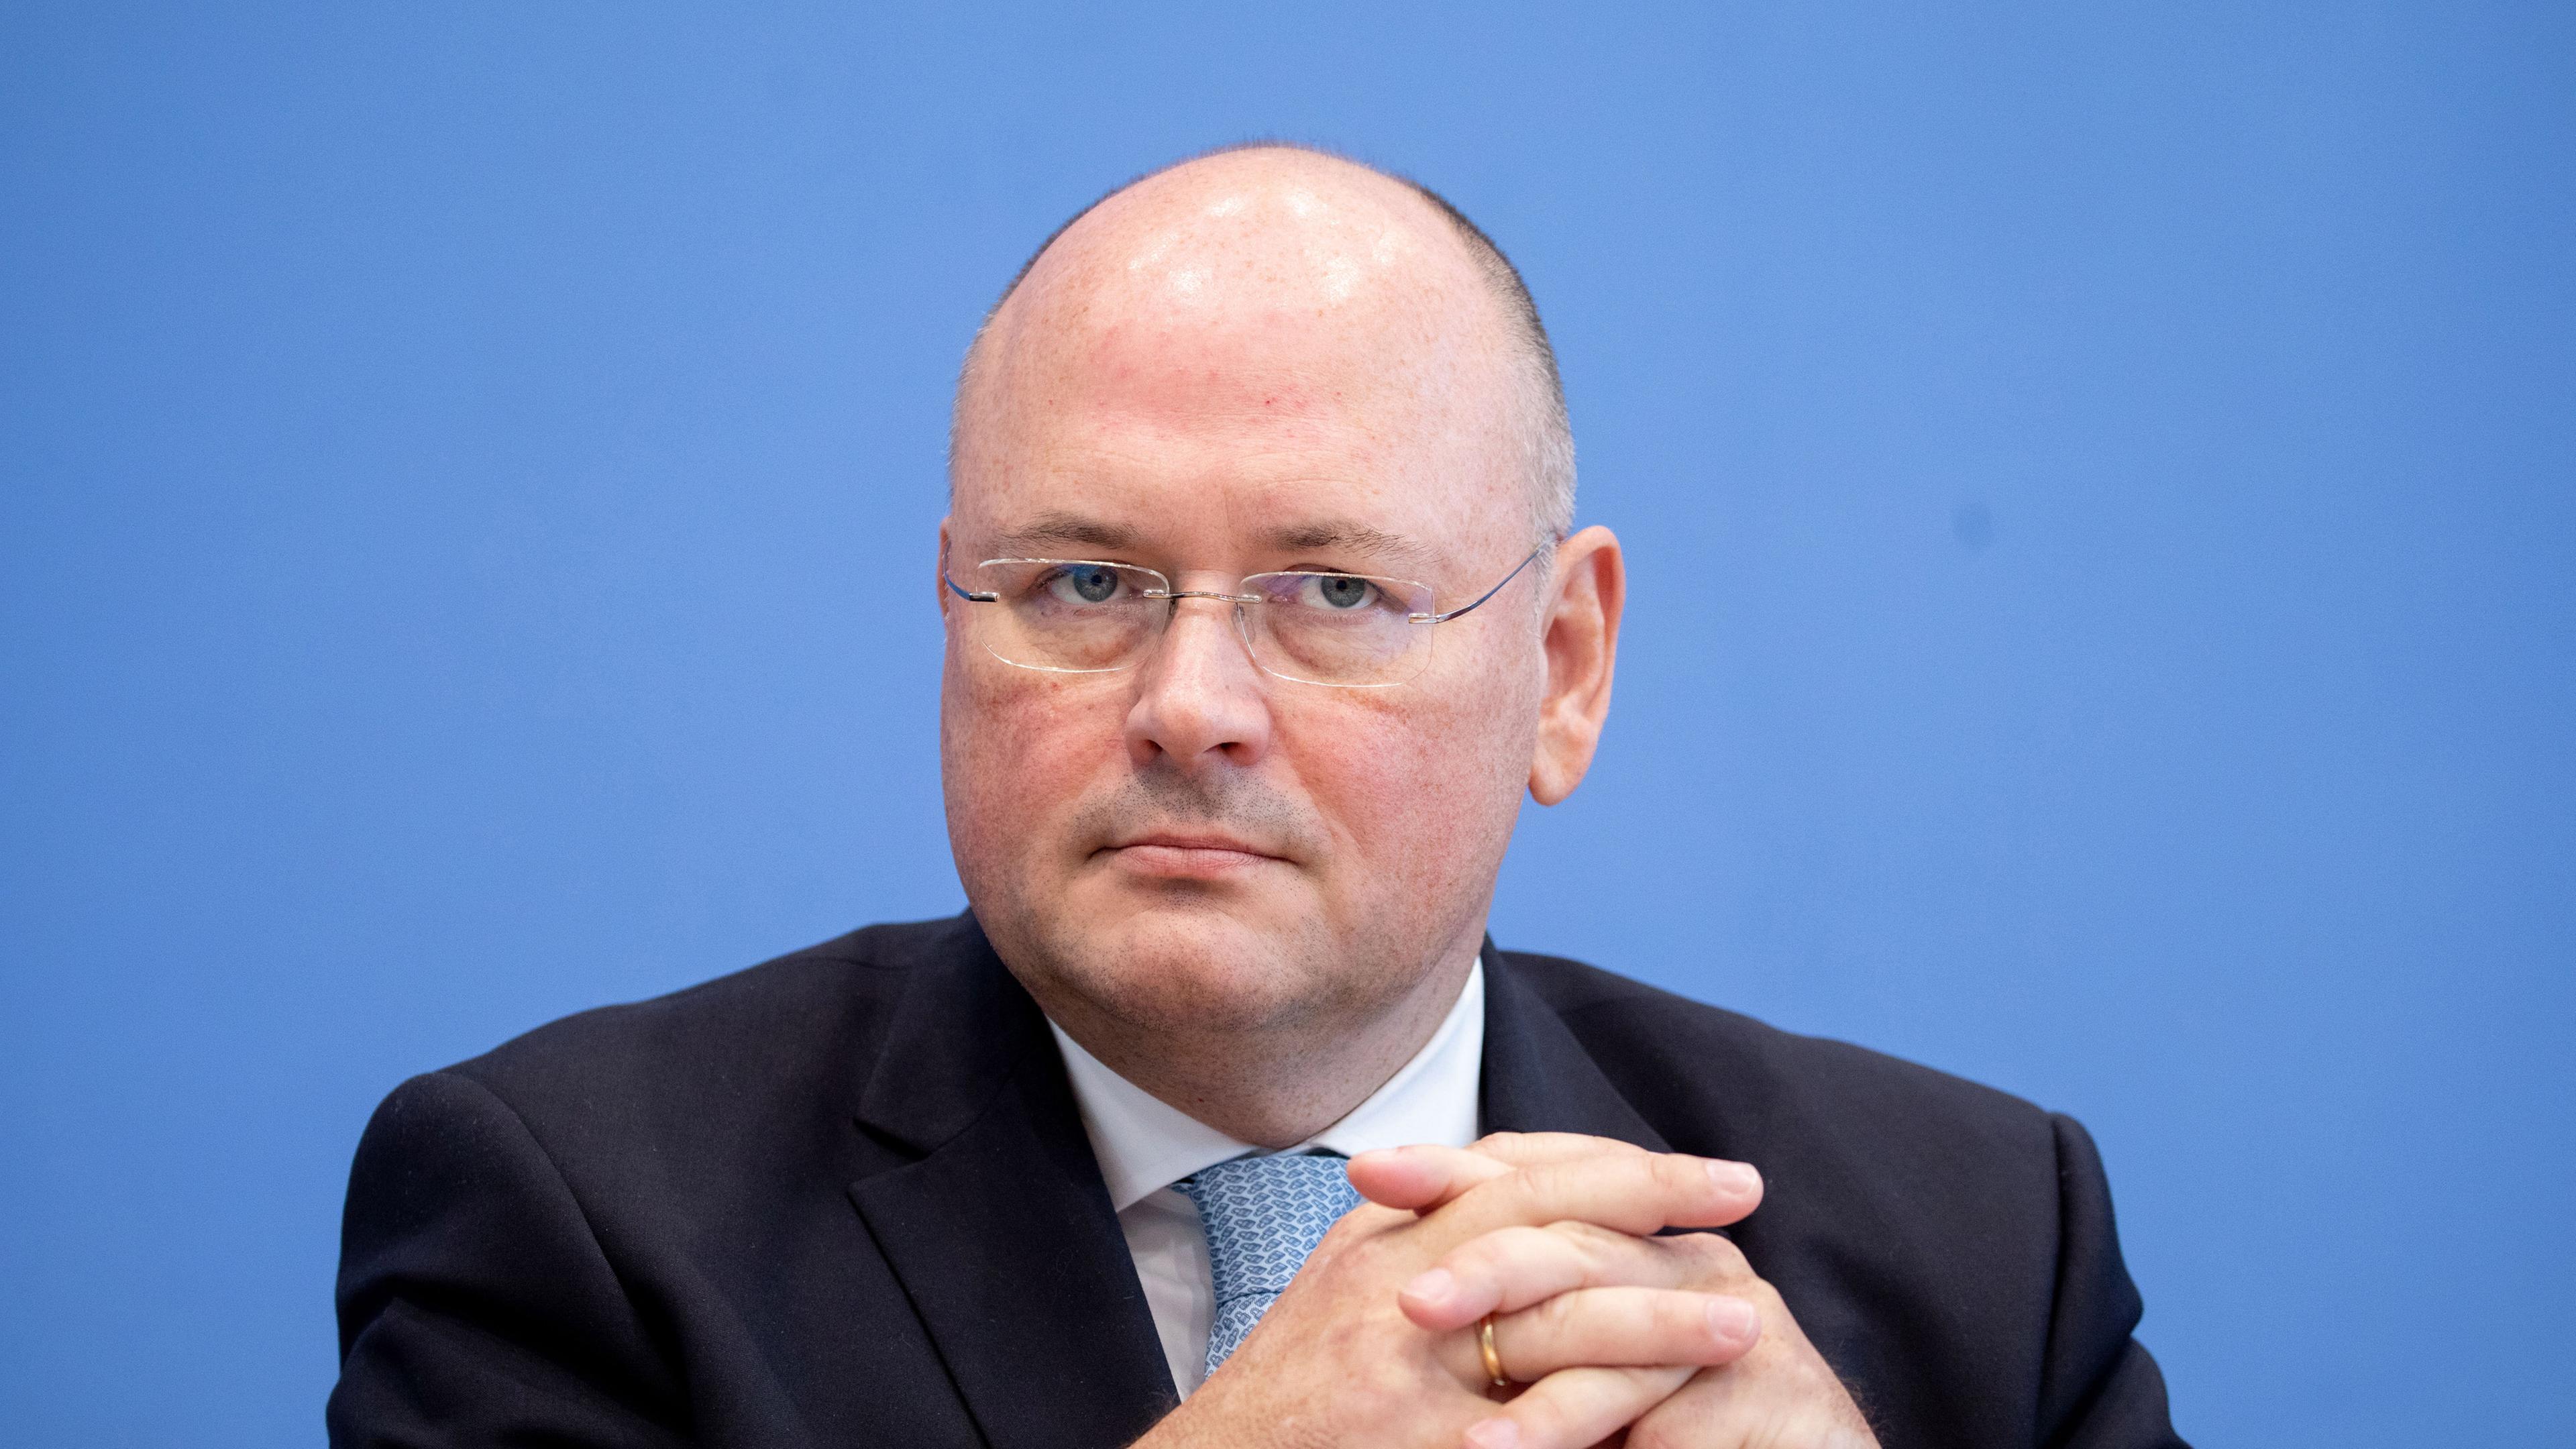 Arne Schönbohm, Präsident des Bundesamts für Sicherheit in der informationstechnik (BSI).